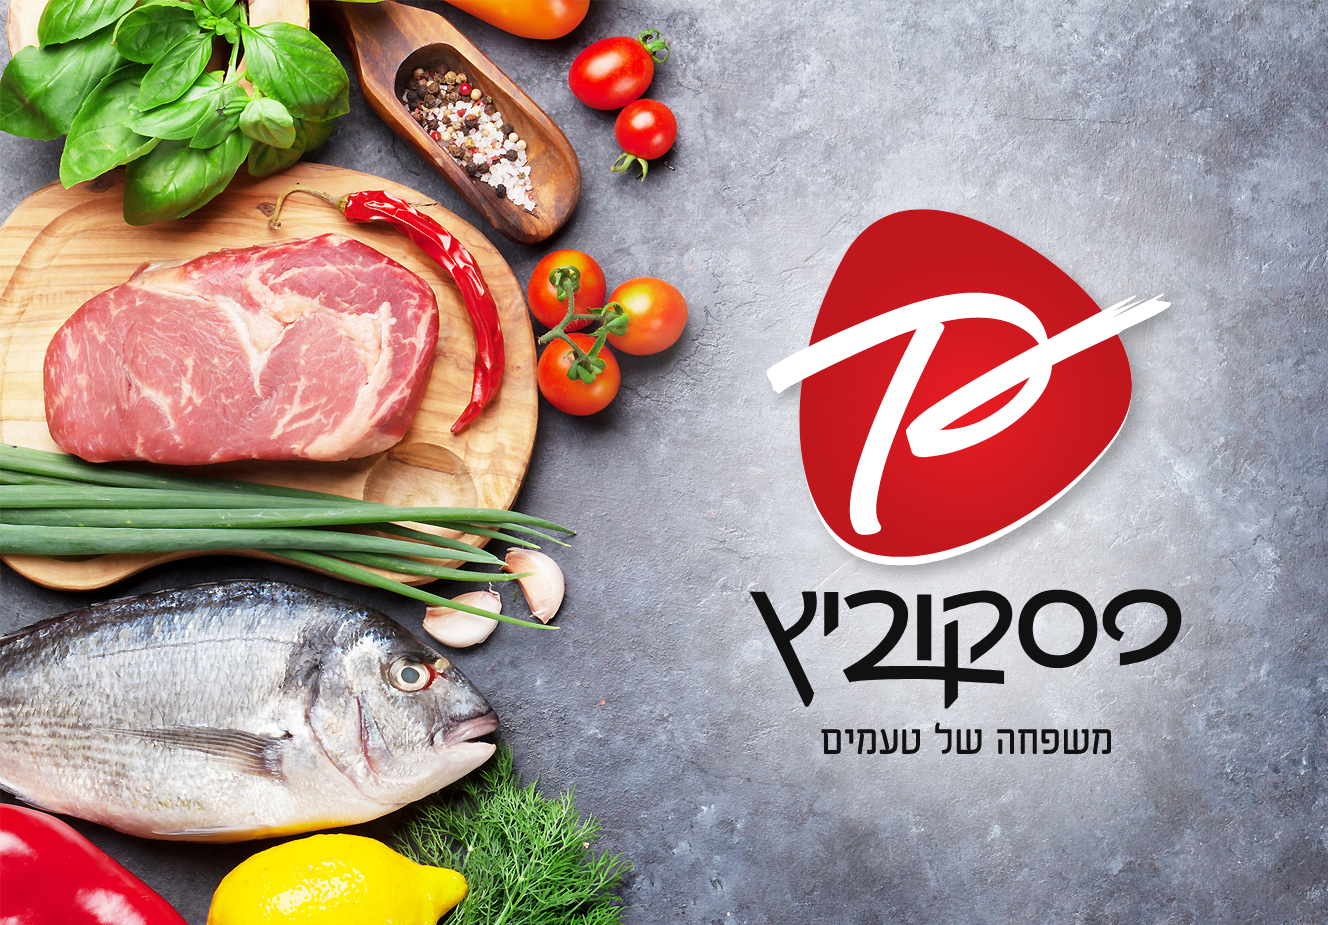 “Паскович”: свежемороженое мясо, рыба, овощи, ягоды – с доставкой на дом!